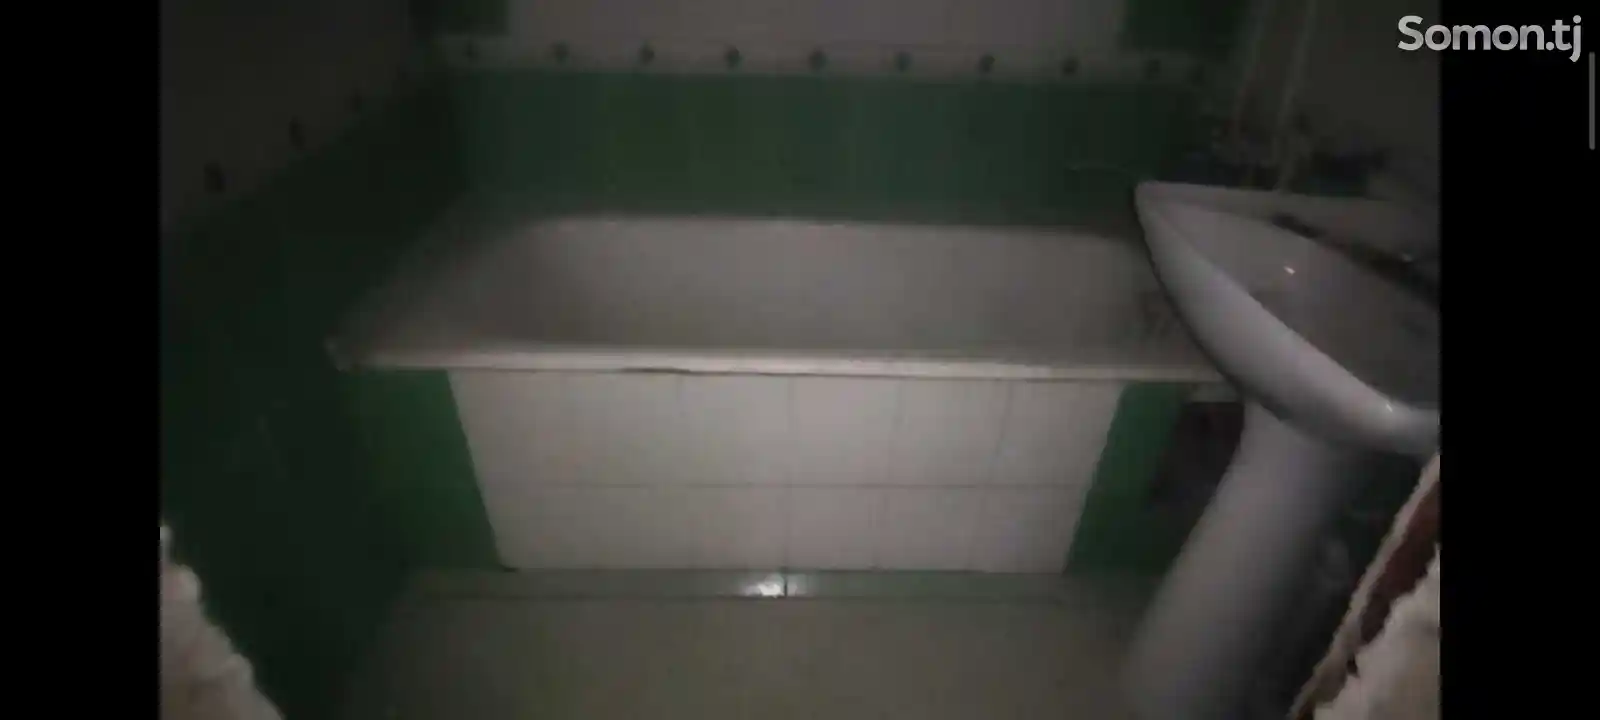 Ванная-2